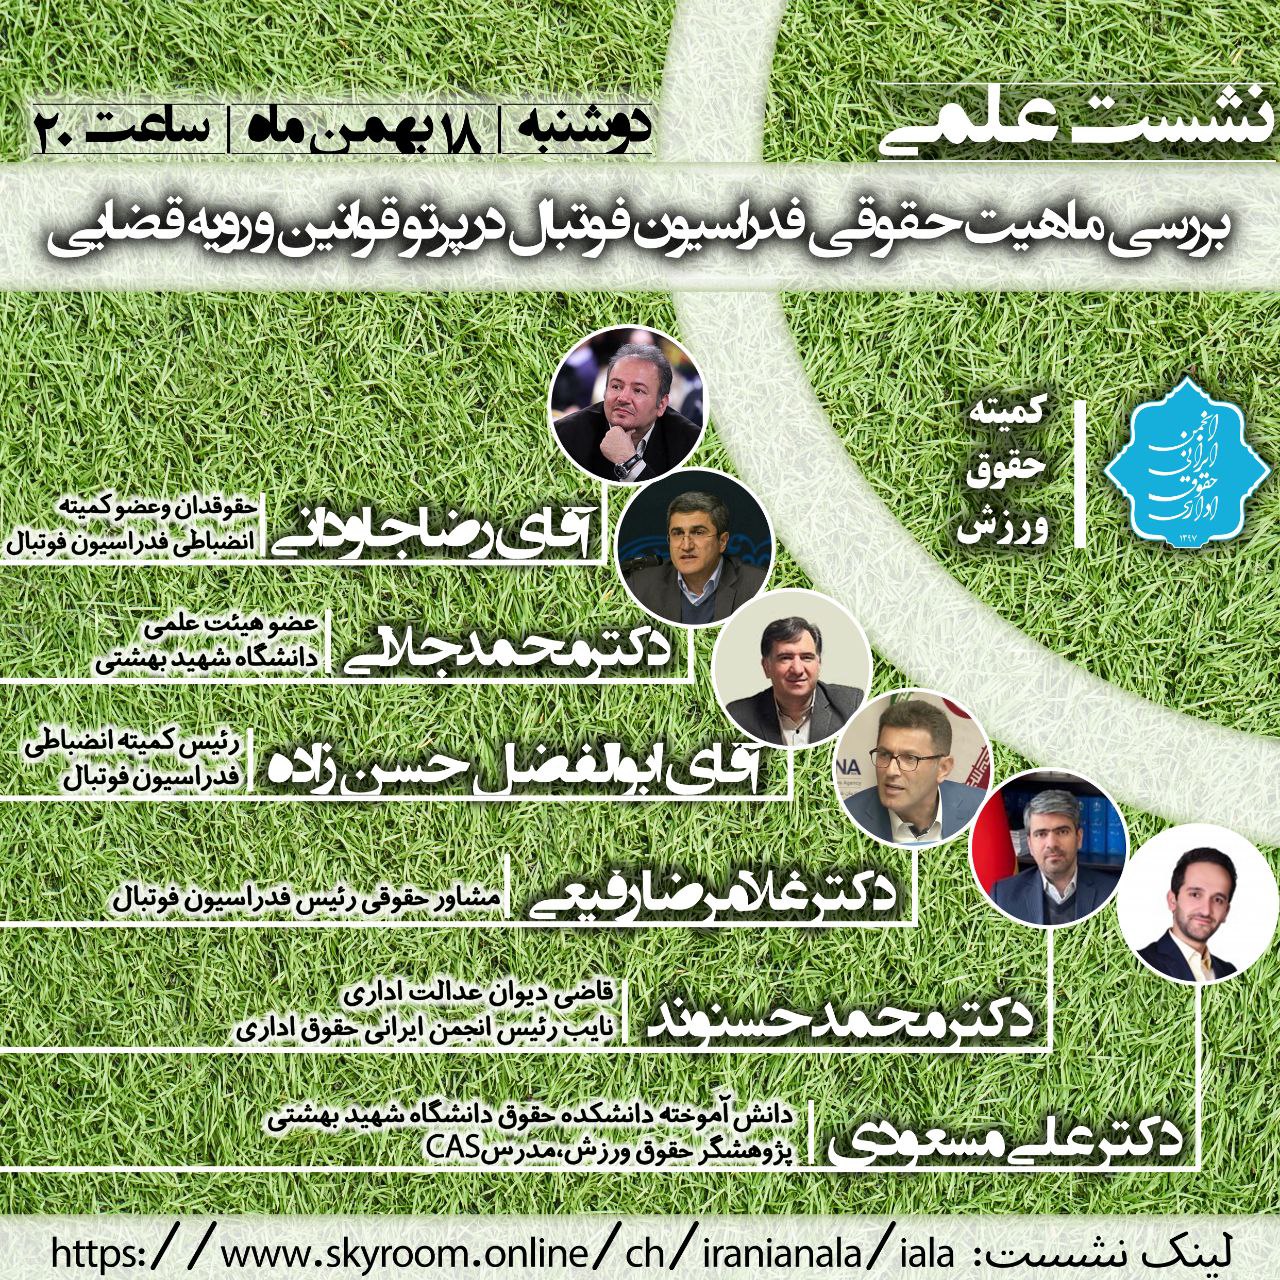 نشست کمیته حقوق ورزش انجمن ایرانی حقوق اداری